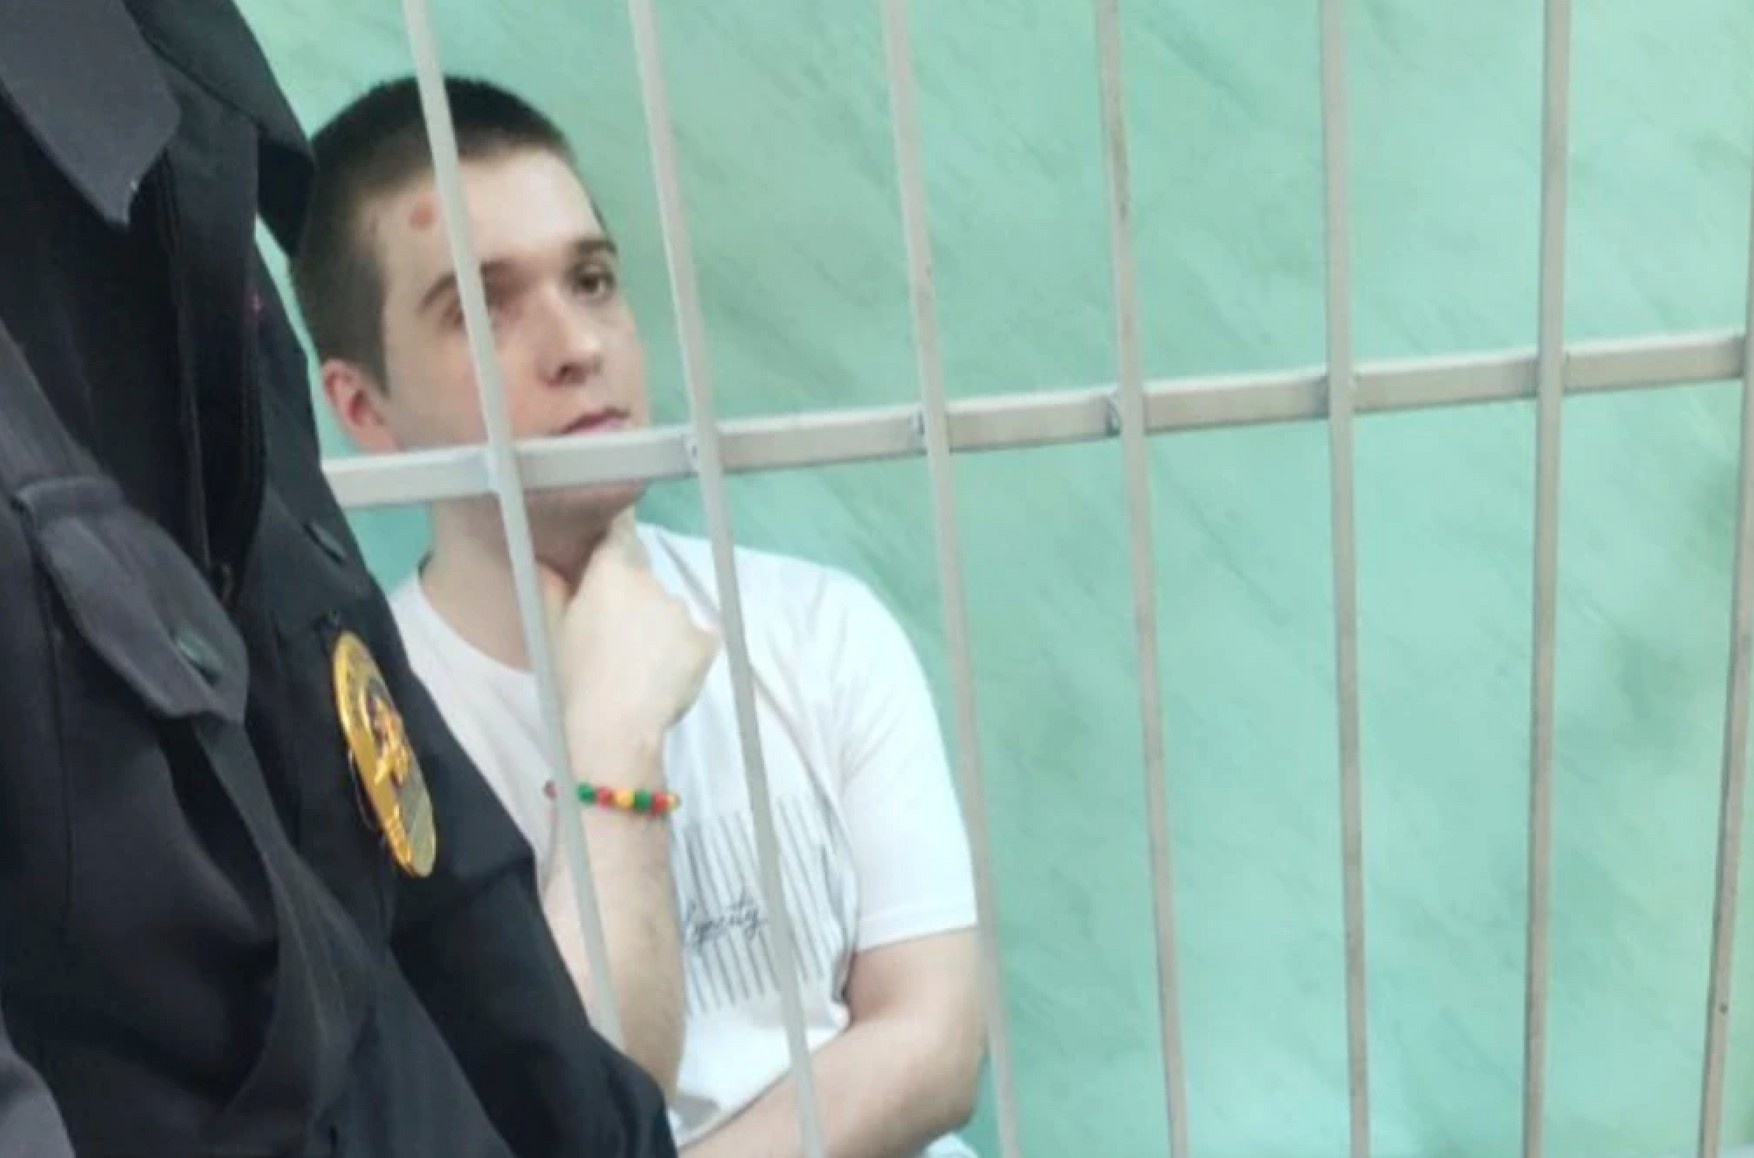 Волонтера из штаба Навального отправили в колонию по экспертизе студента, который на него донес